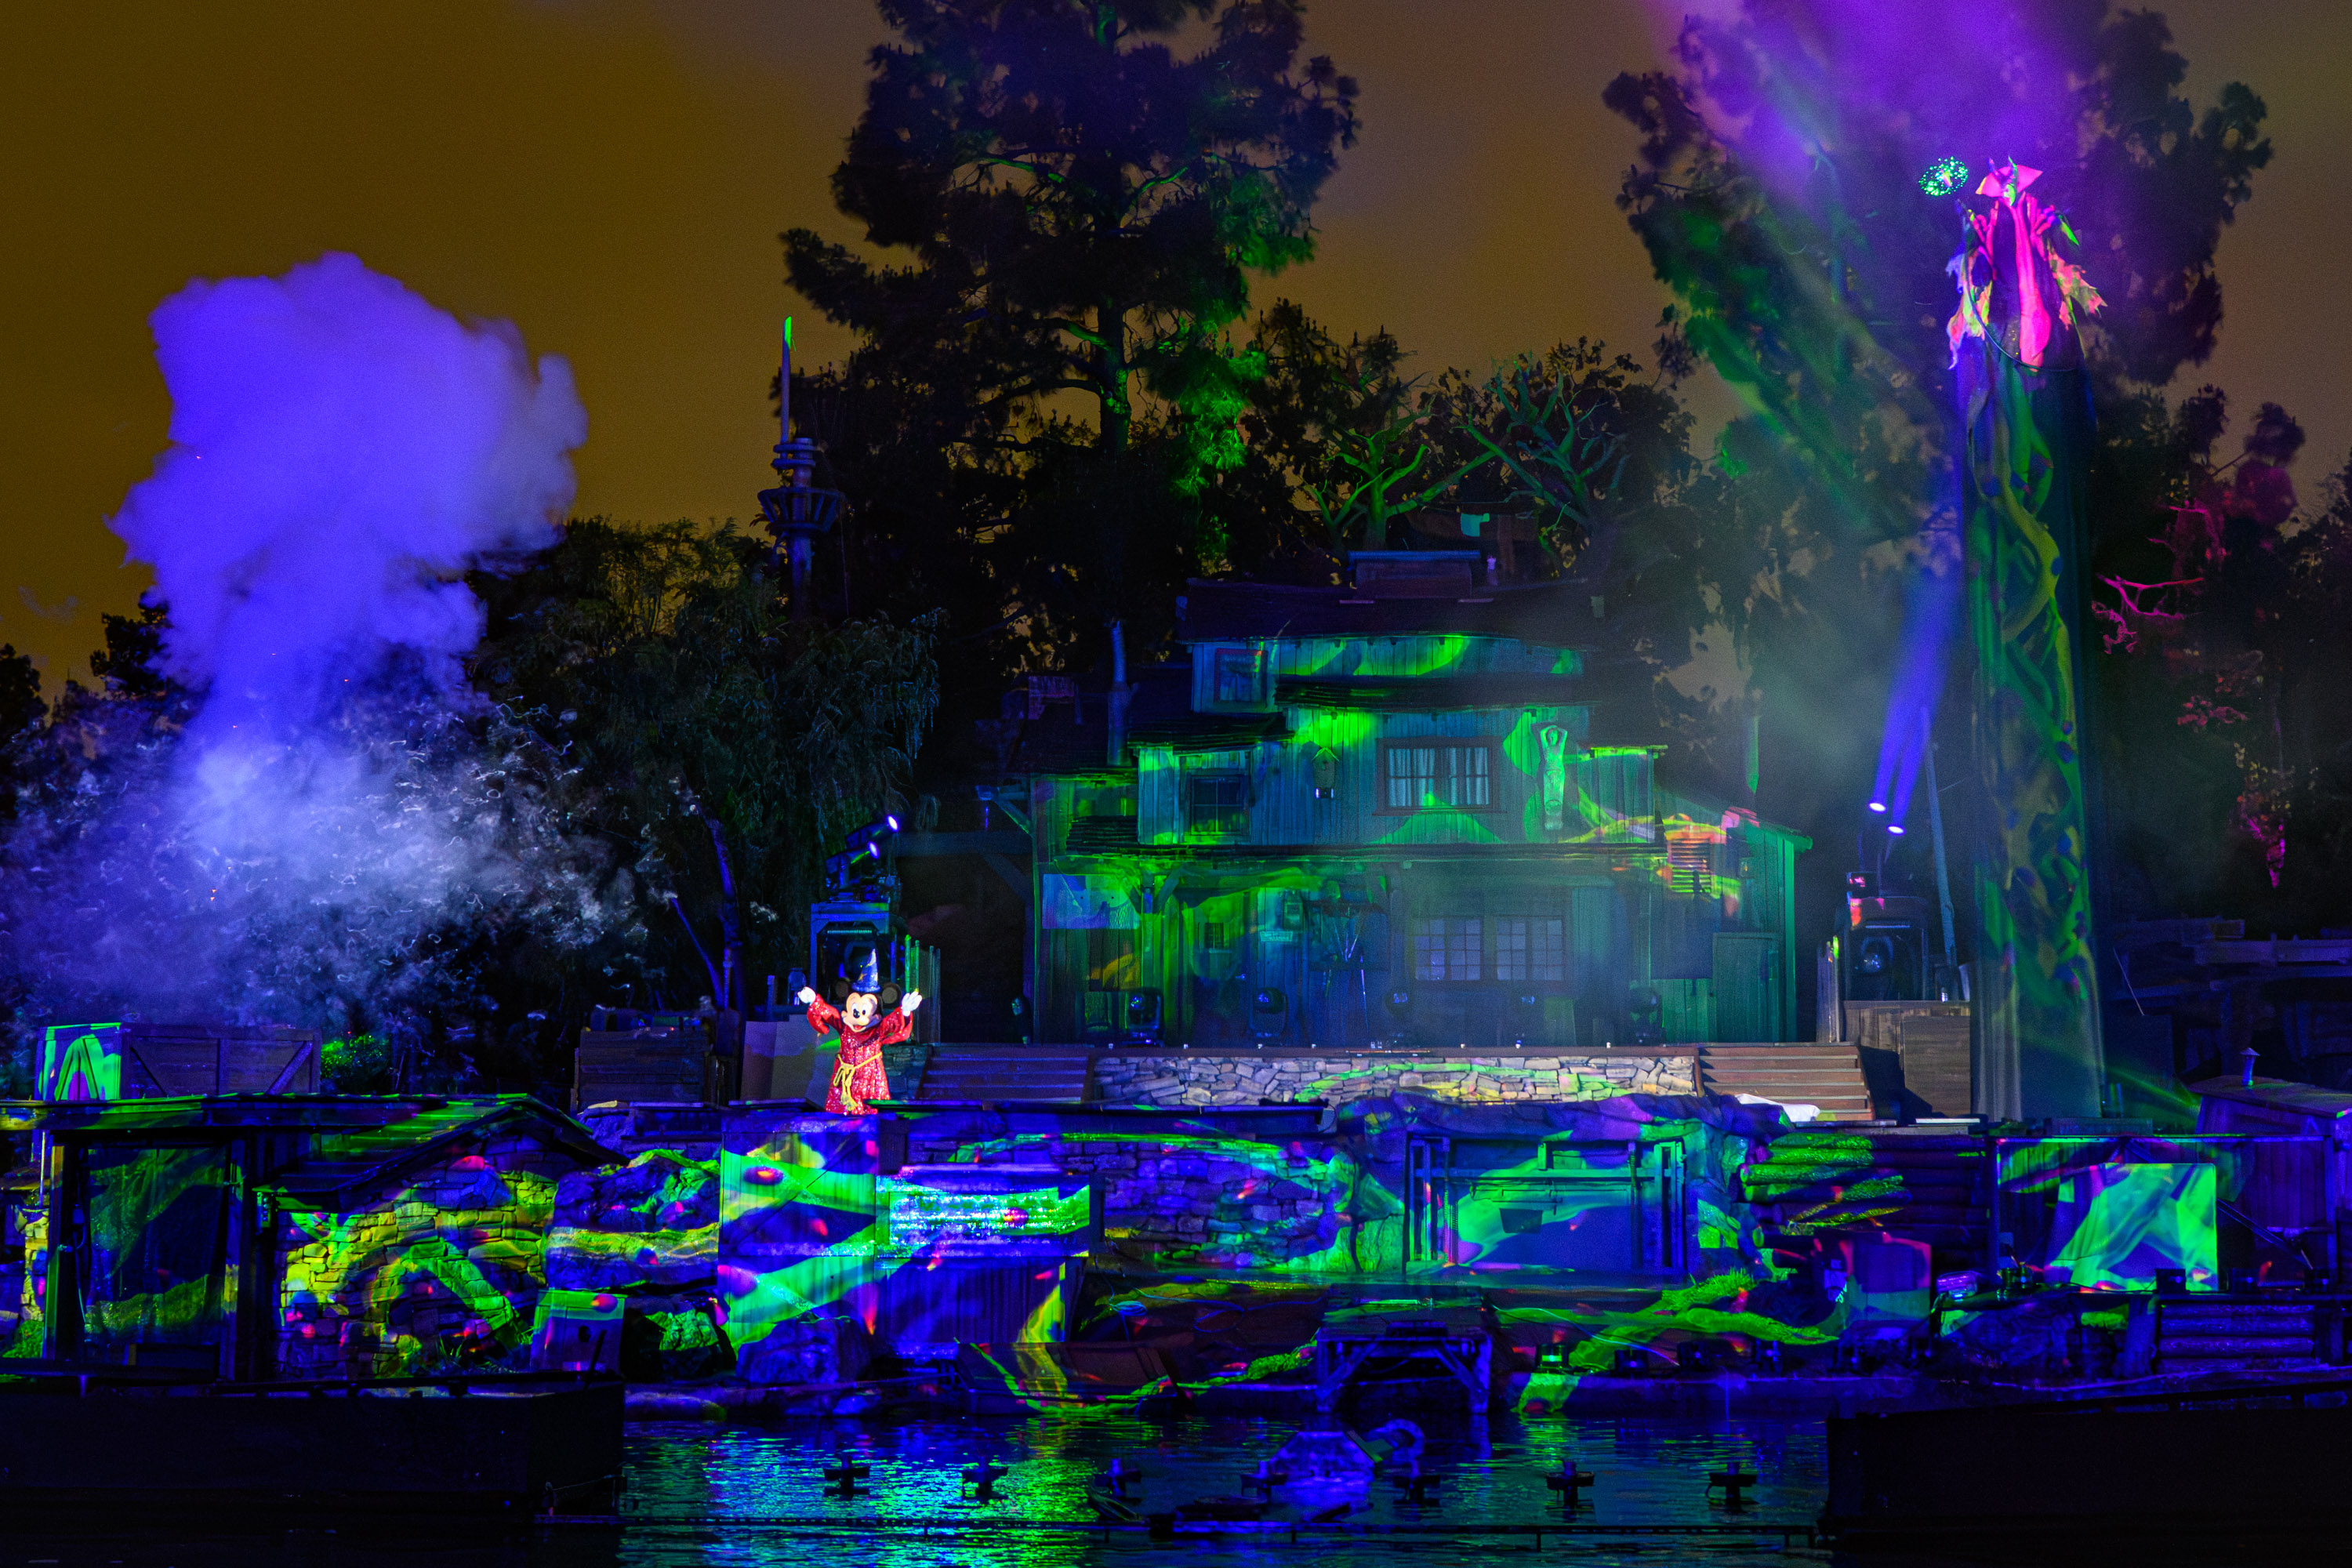 El espectáculo Fantasmic! regresa a Disneyland Park: Aquí la fecha y nuevos efectos especiales